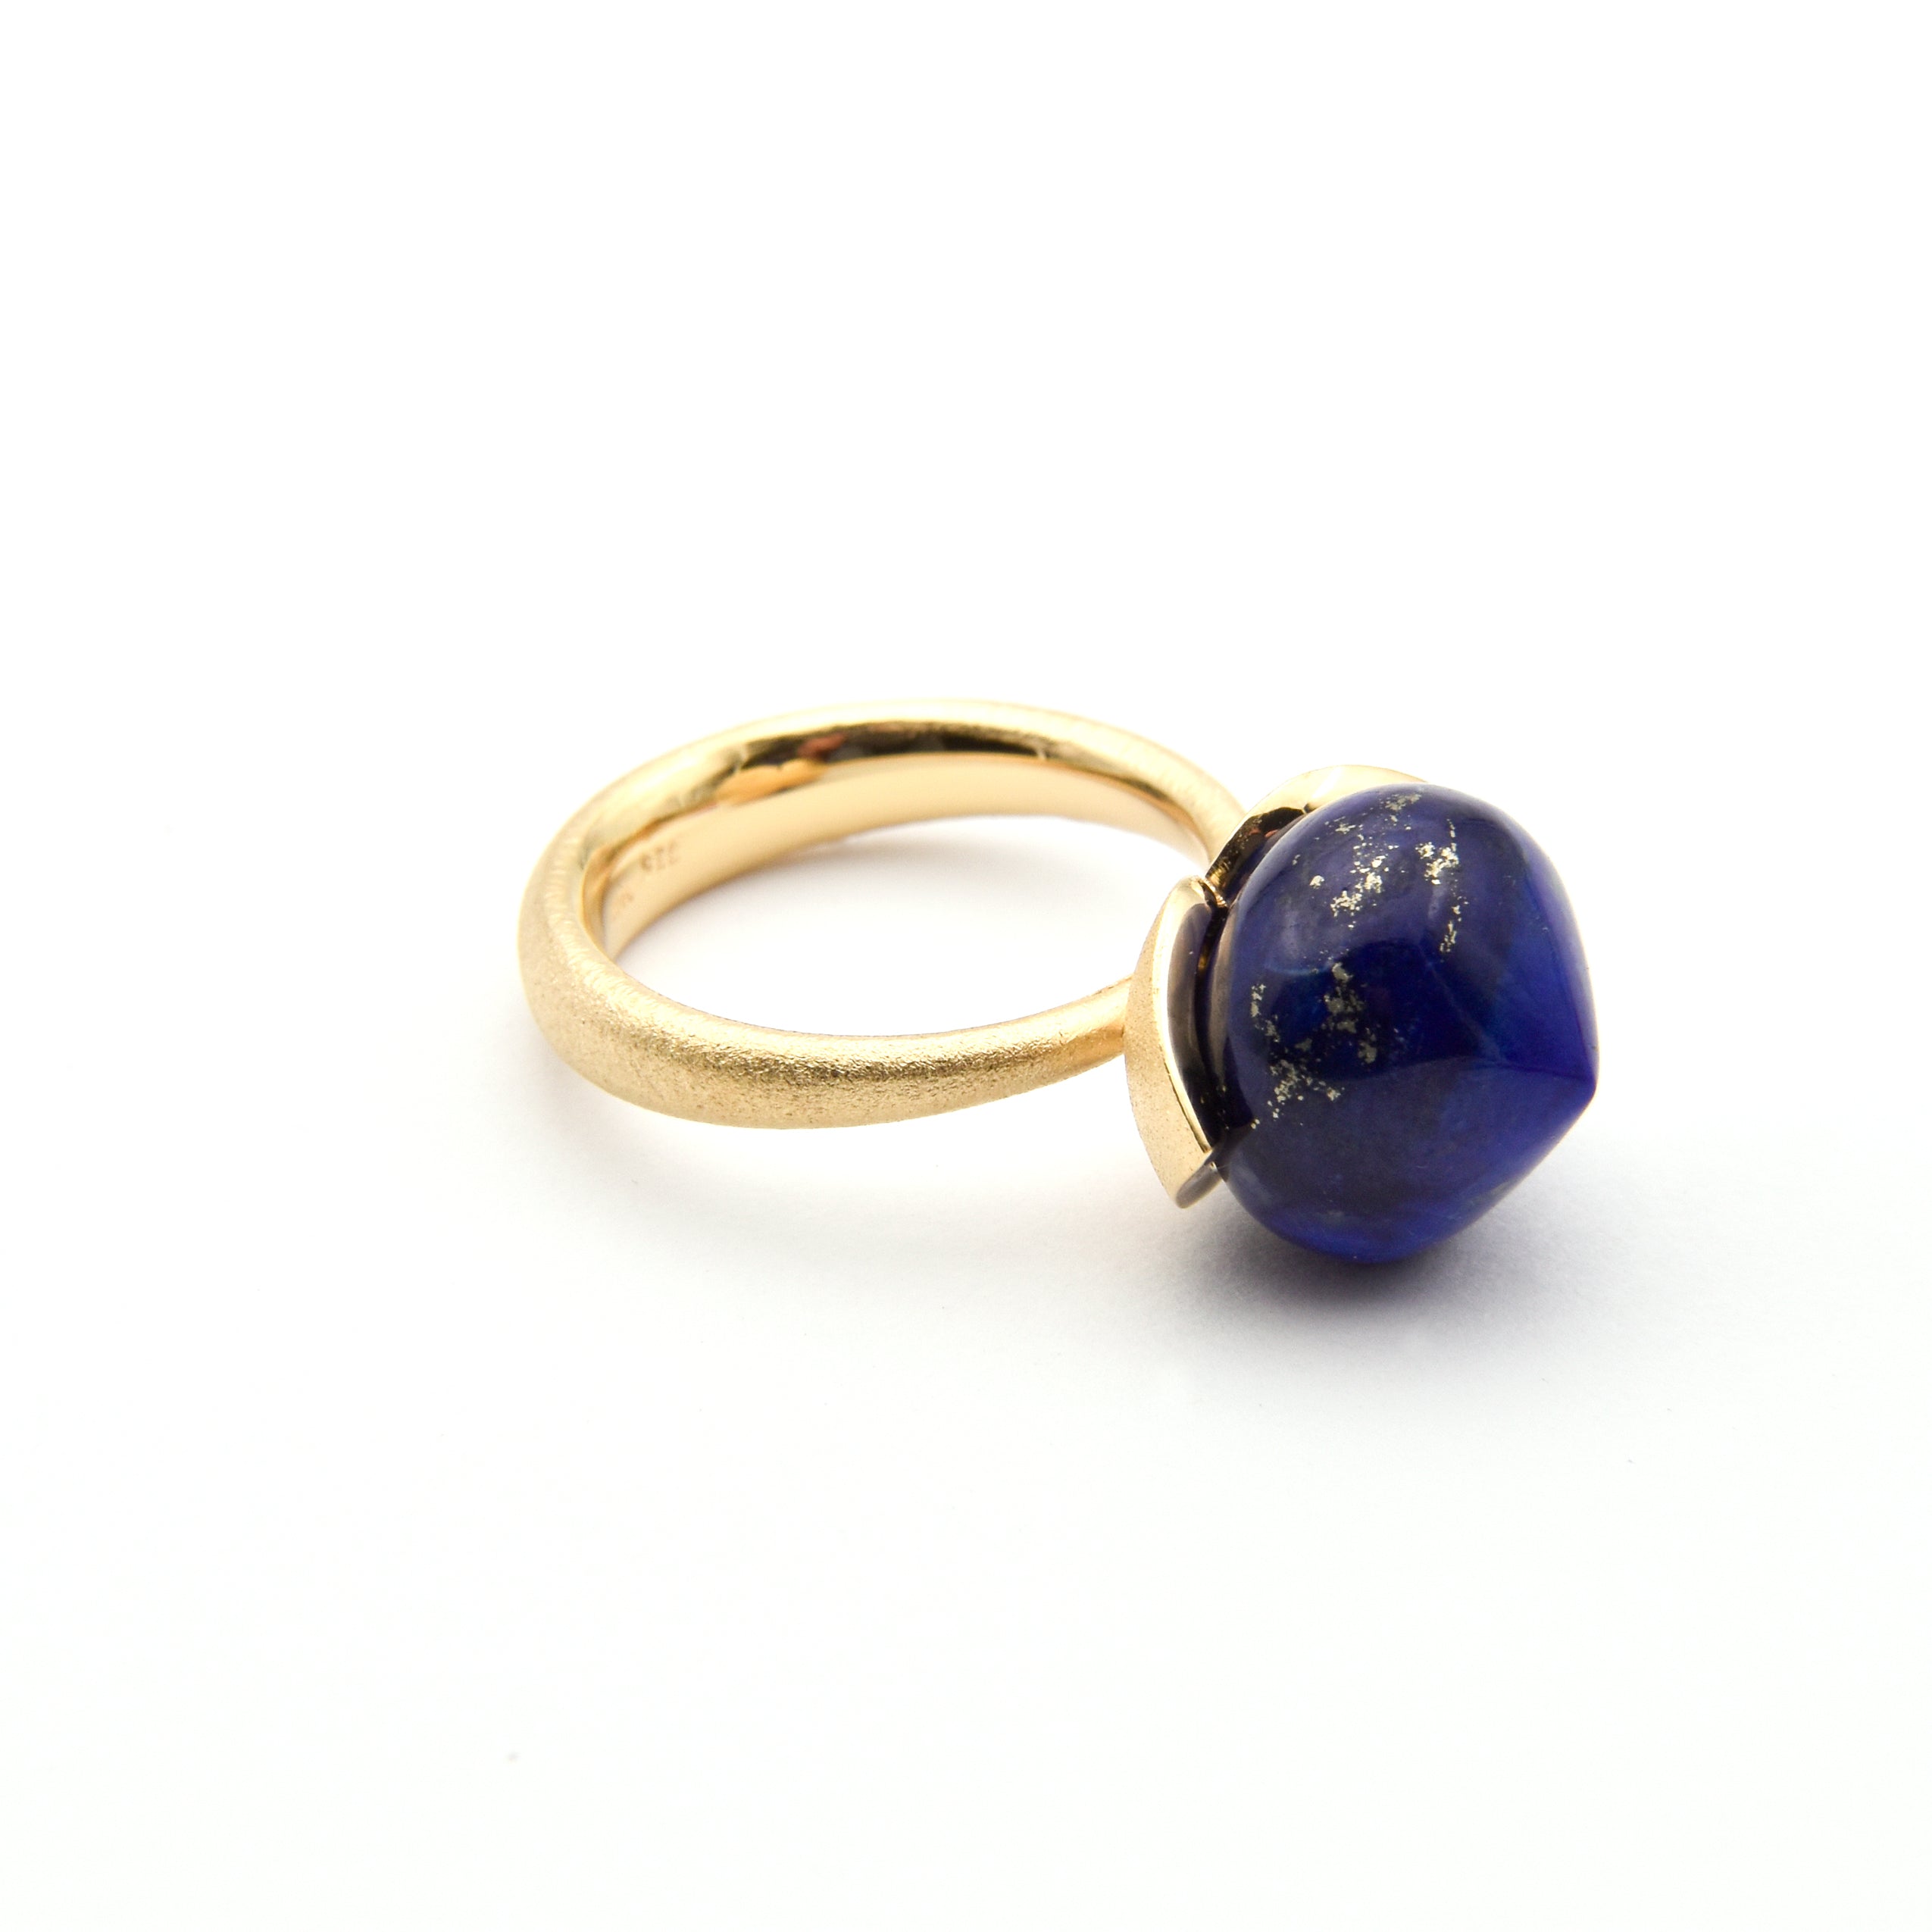 Dolce Ring "big" mit Lapis Lazuli 925/-